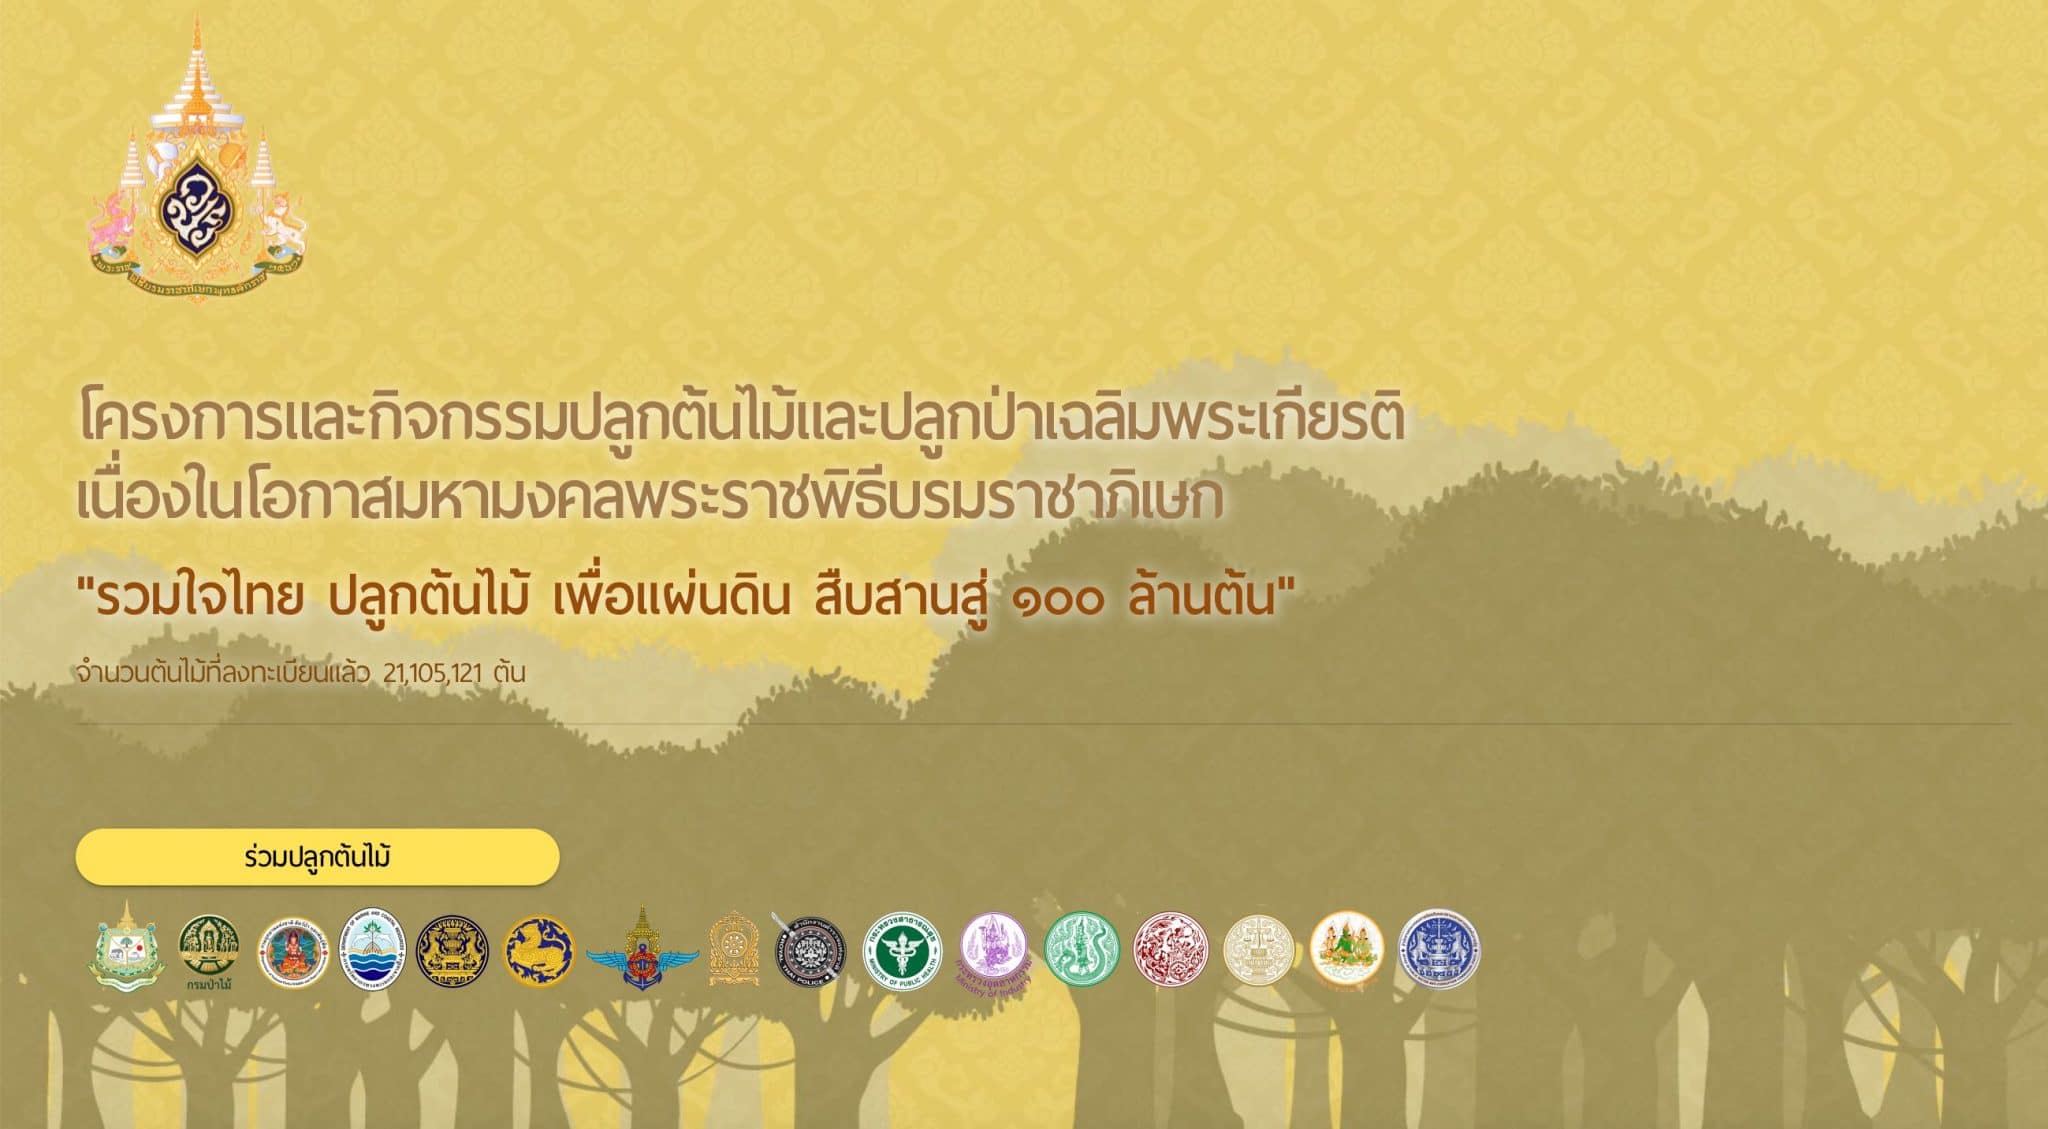 ขอเชิญลงทะเบียนปลูกต้นไม้ โครงการ"รวมใจไทย ปลูกต้นไม้ เพื่อแผ่นดิน สืบสานสู่ ๑๐๐ ล้านต้น" รับเกียรติบัตรออนไลน์ฟรี